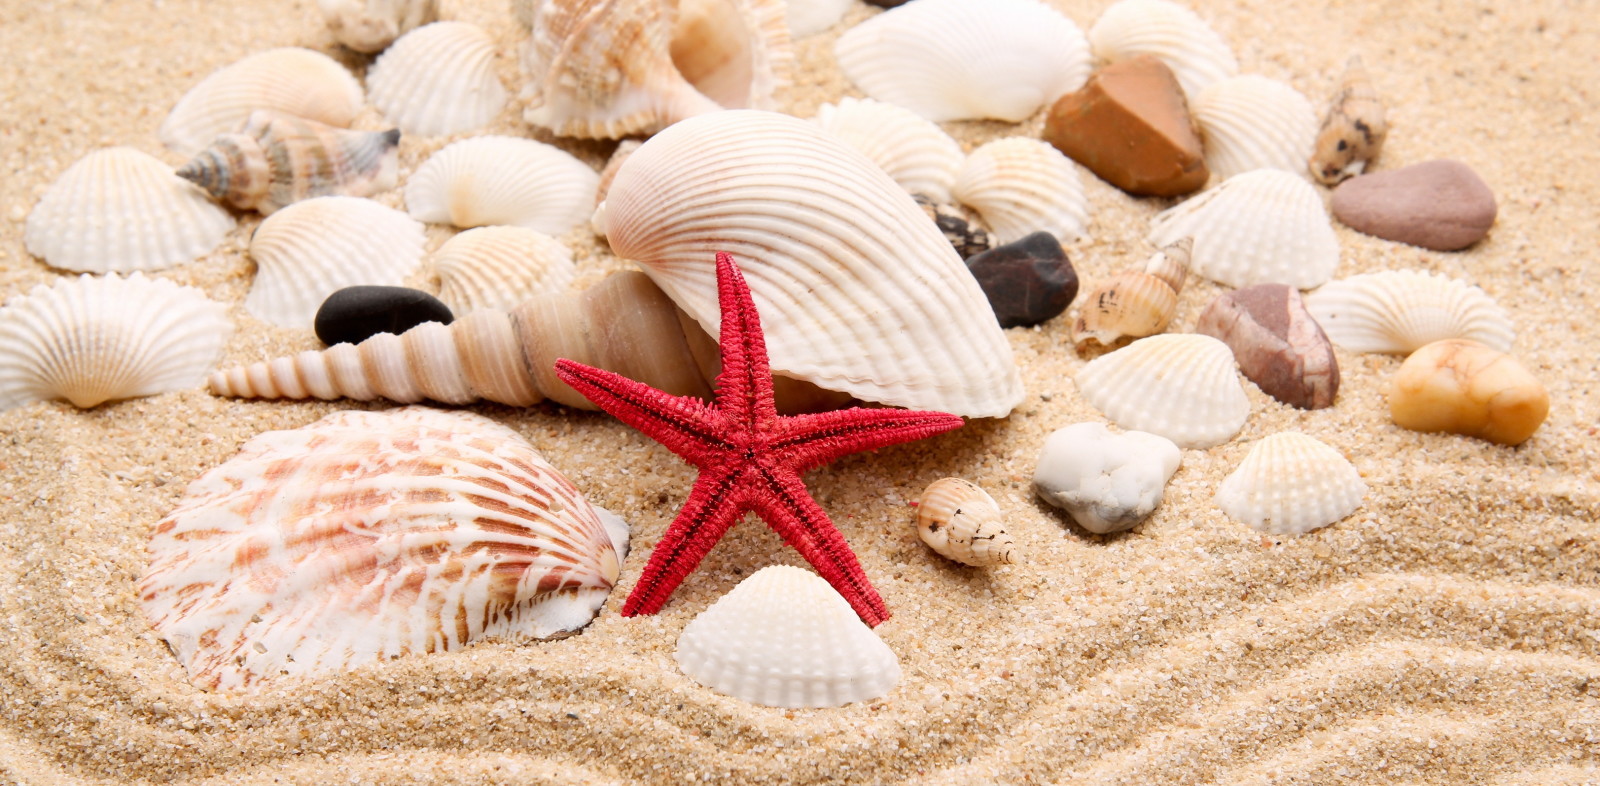 바닷가, 조약돌, 돌, 별, 모래, 껍질, 진주, 껍질